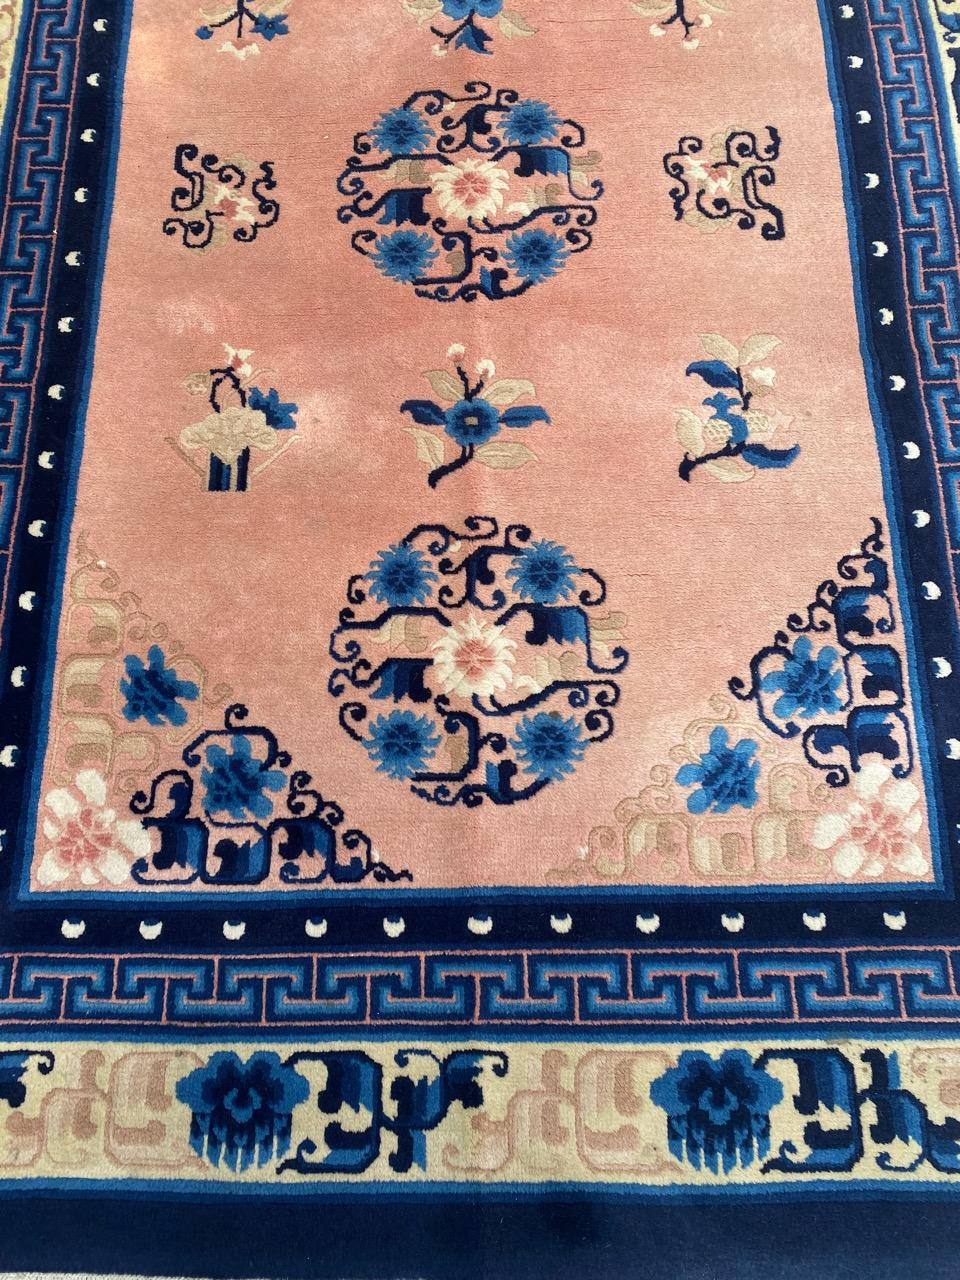 Nizza Mitte des Jahrhunderts chinesischen Peking Teppich mit schönen chinesischen Art Deco Design und schöne Farben mit blauen, ganz Hand mit Wolle Samt auf Baumwollbasis geknüpft.

✨✨✨
